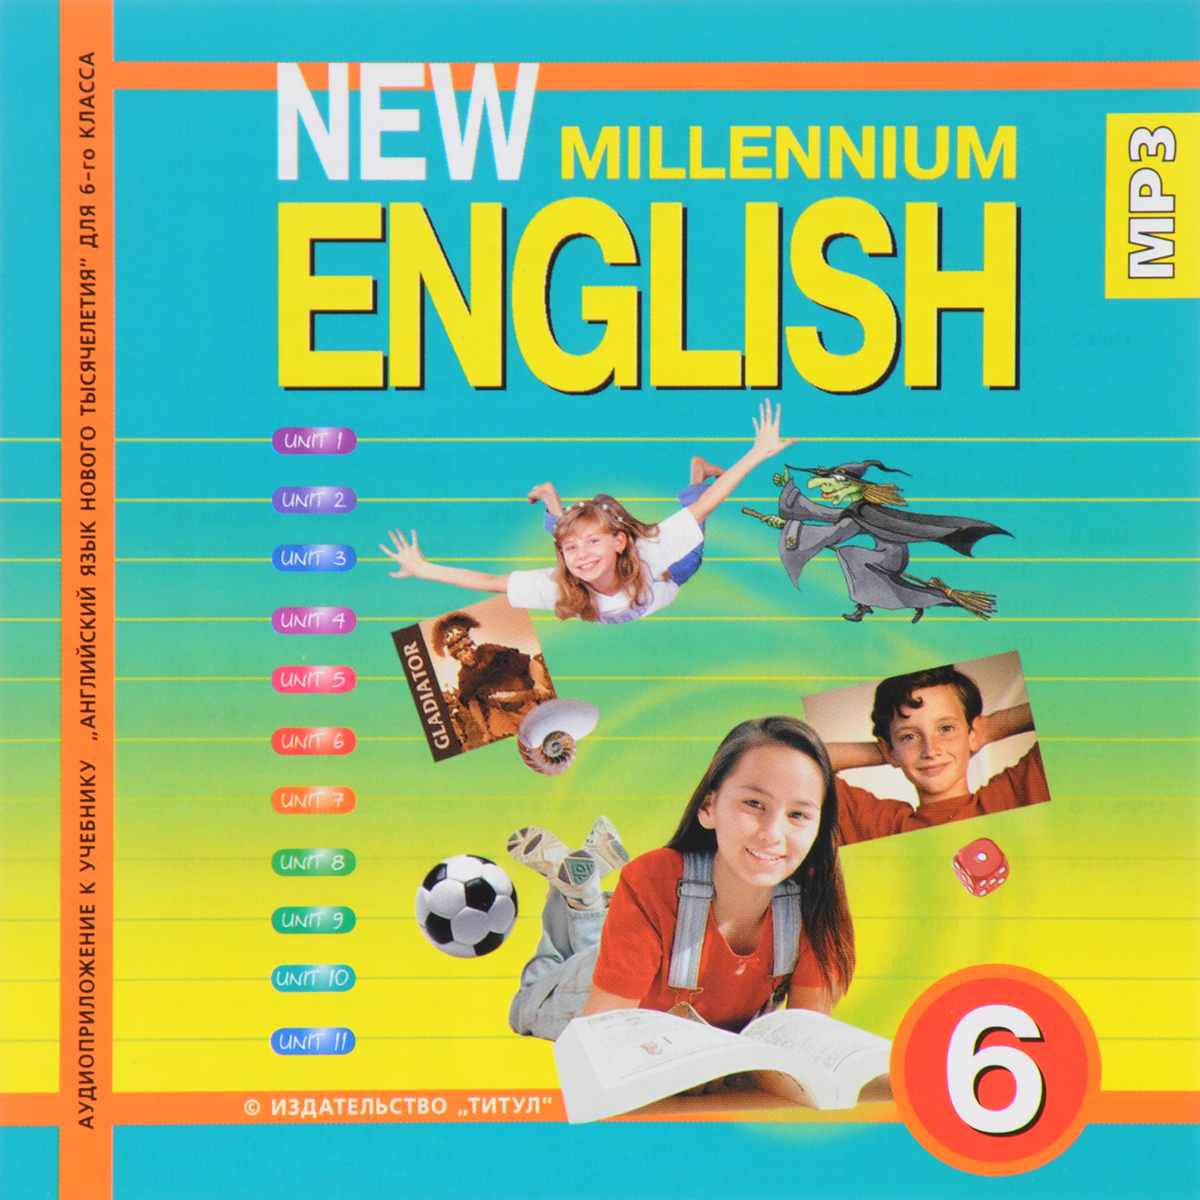 New millennium english 9 класс аудиоприложение скачать бесплатно